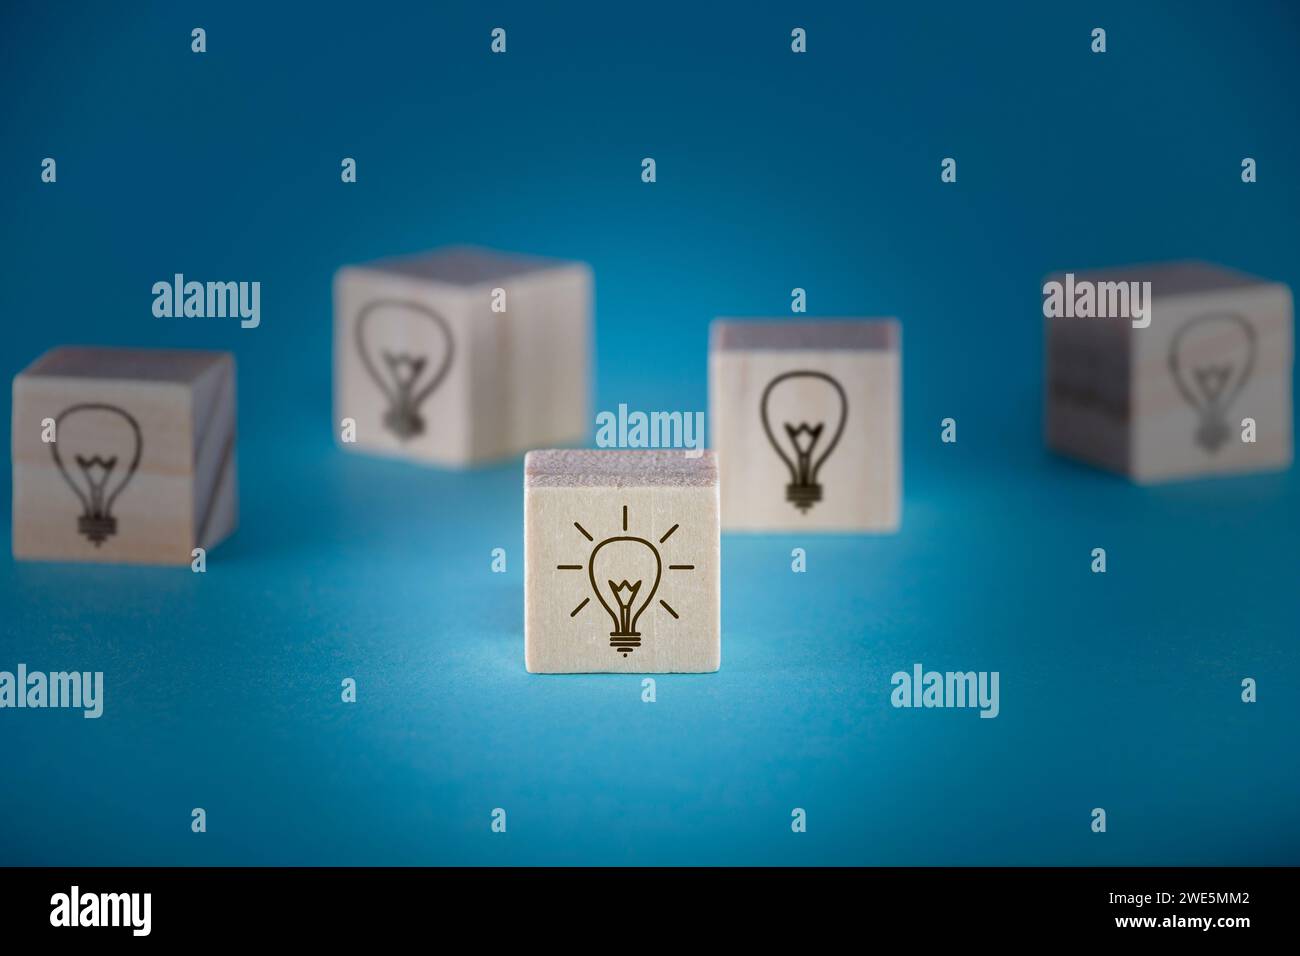 Più cubi di legno con icone di lampadine su sfondo blu profondo, uno dei quali è acceso, raffigurante brainstorming e sviluppo di concept. Foto Stock